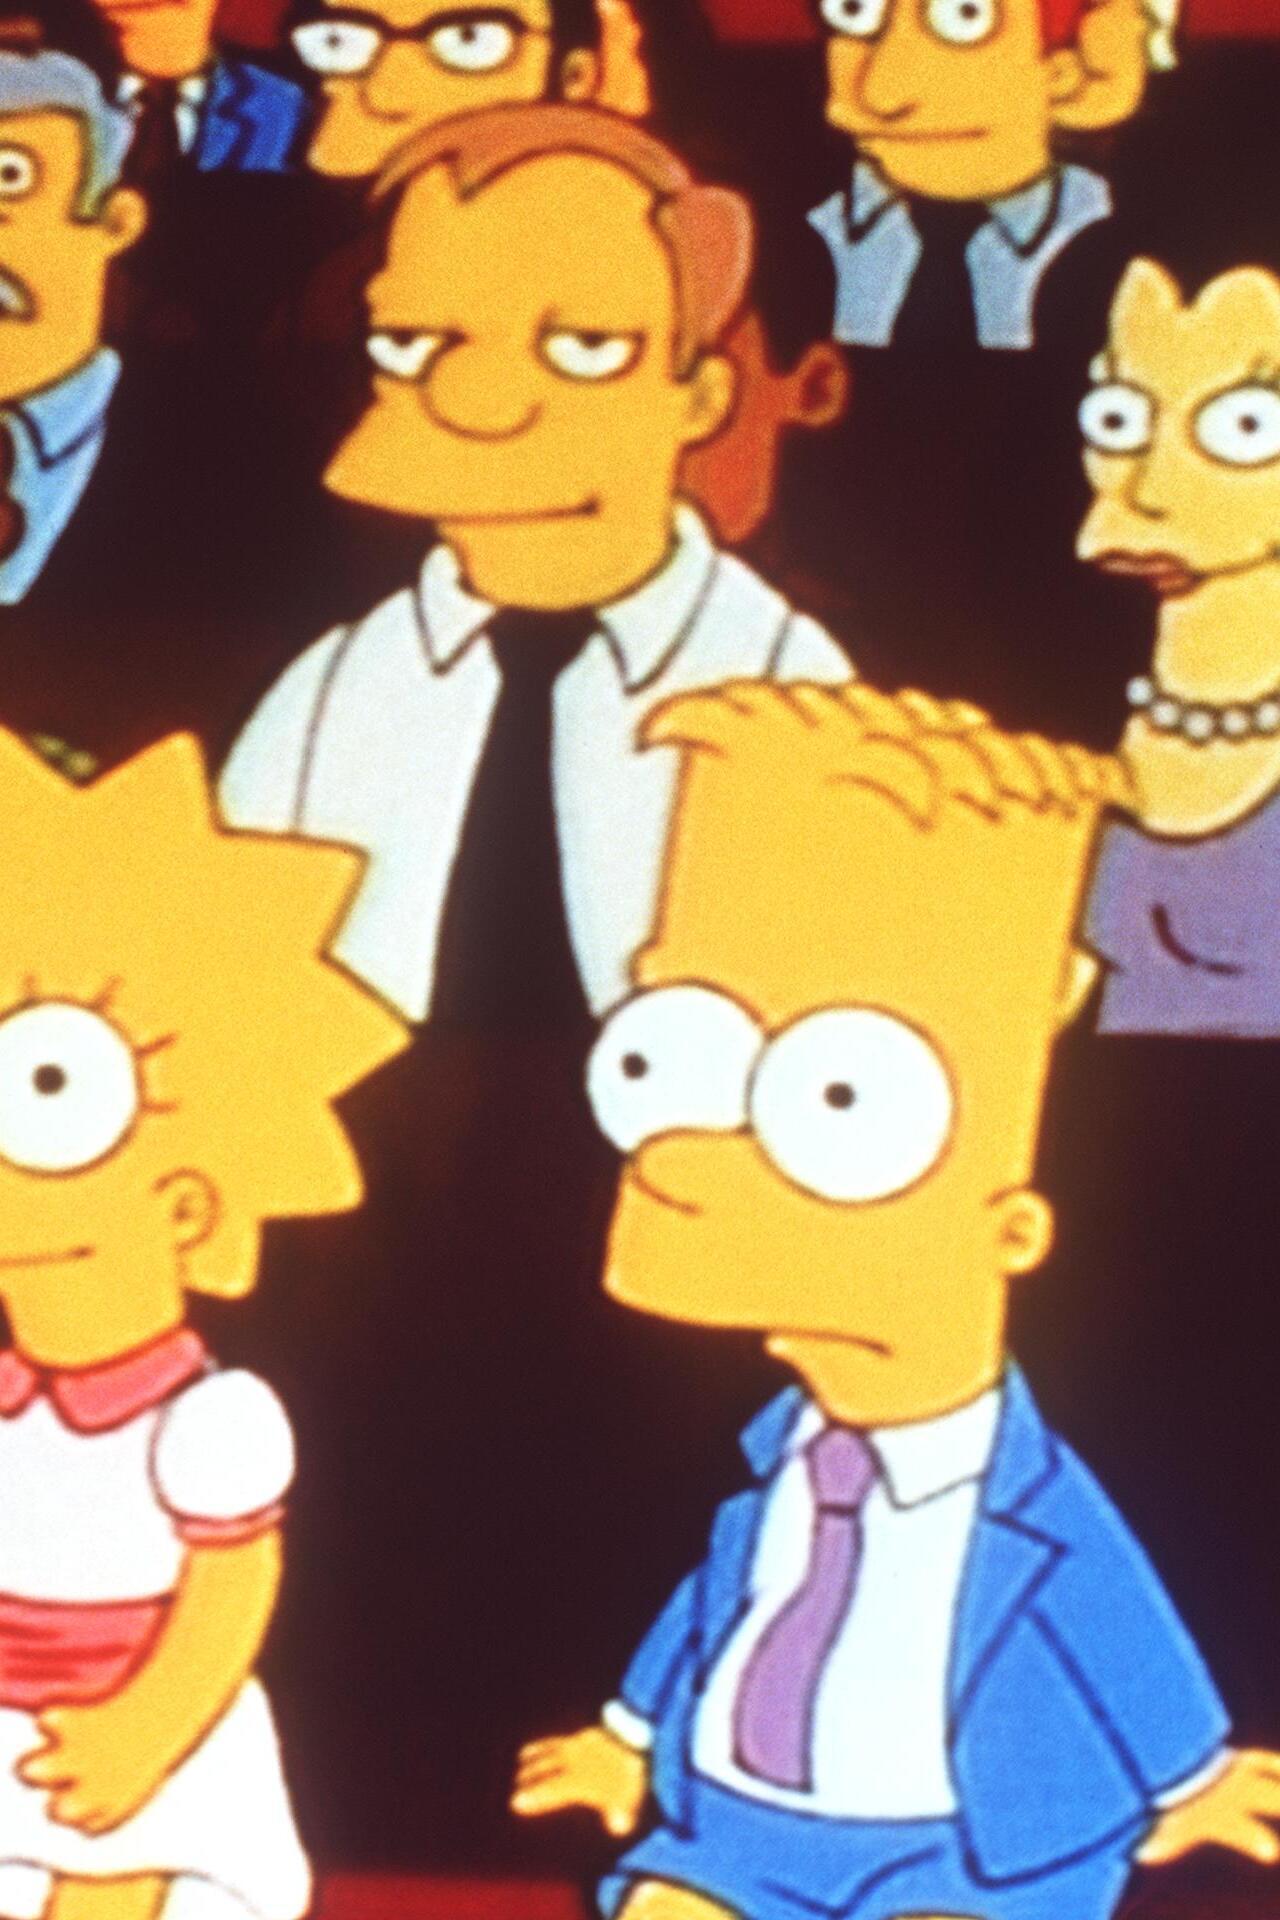 Les Simpson - Le garçon qui en savait trop